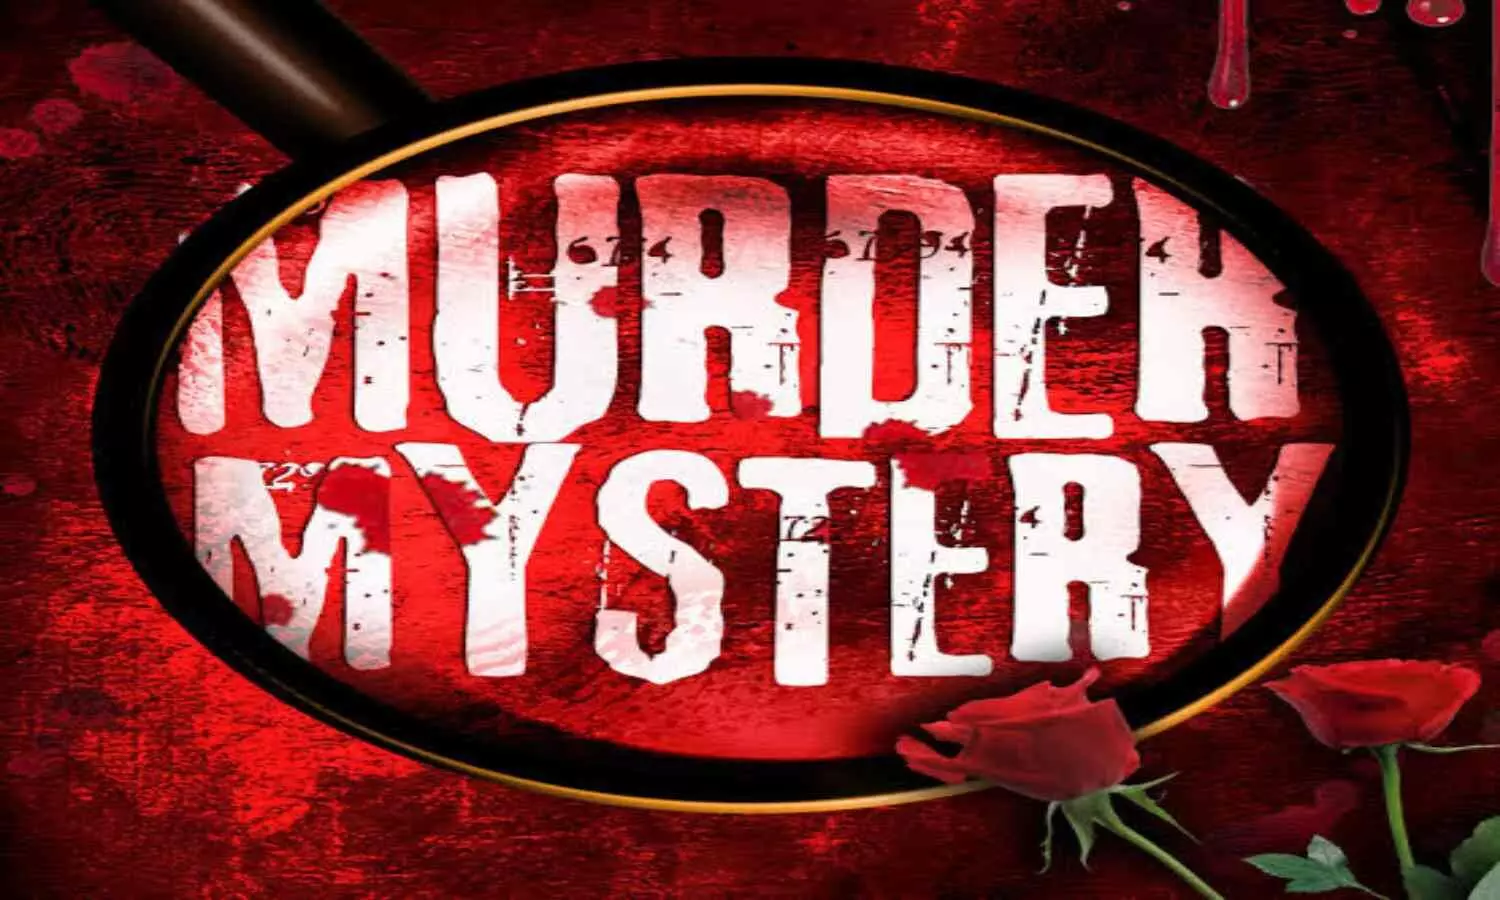 Murder Mysteries Movies: टॉप 15 मर्डर मिस्ट्रीज मूवी एंड टीवी शोज, IMDb कि लिस्ट में हैं मौजूद